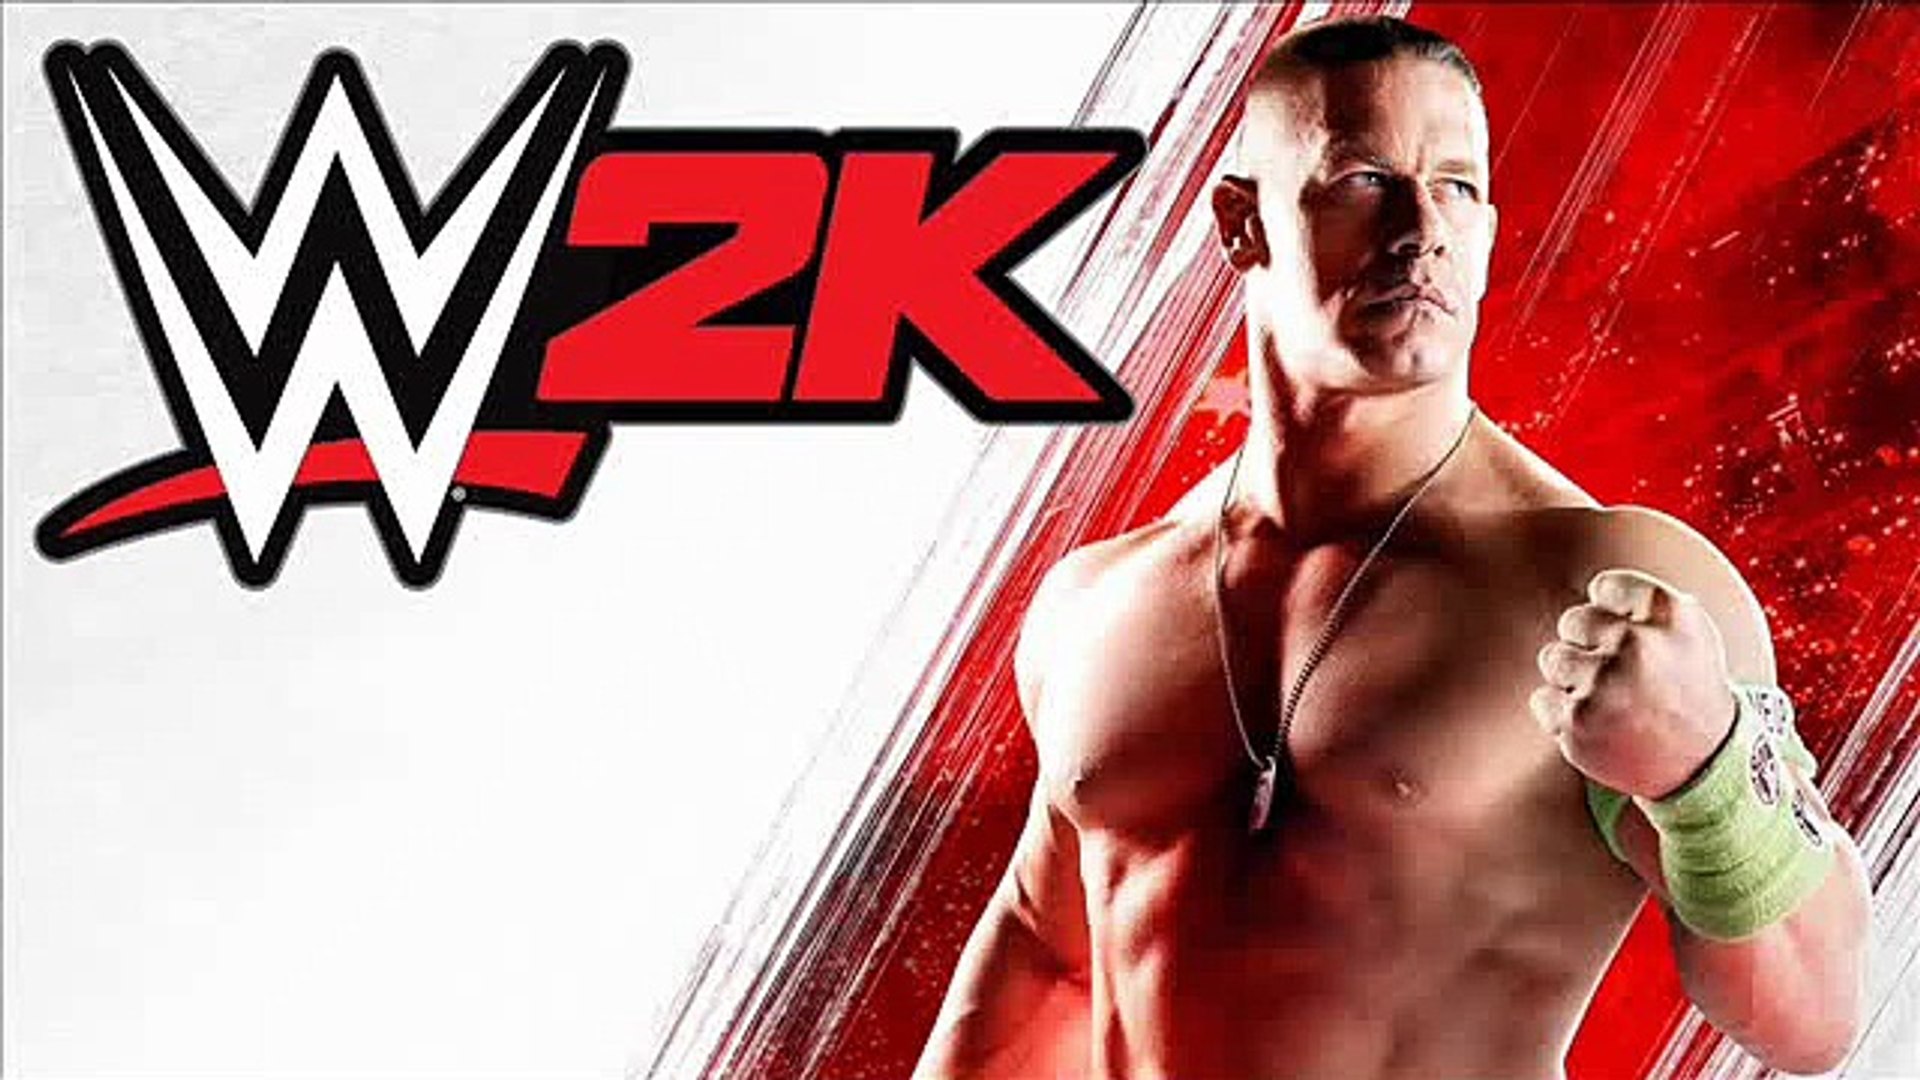 تحميل لعبة المصارعة الحرة للاندرويد WWE 2K for android - فيديو Dailymotion